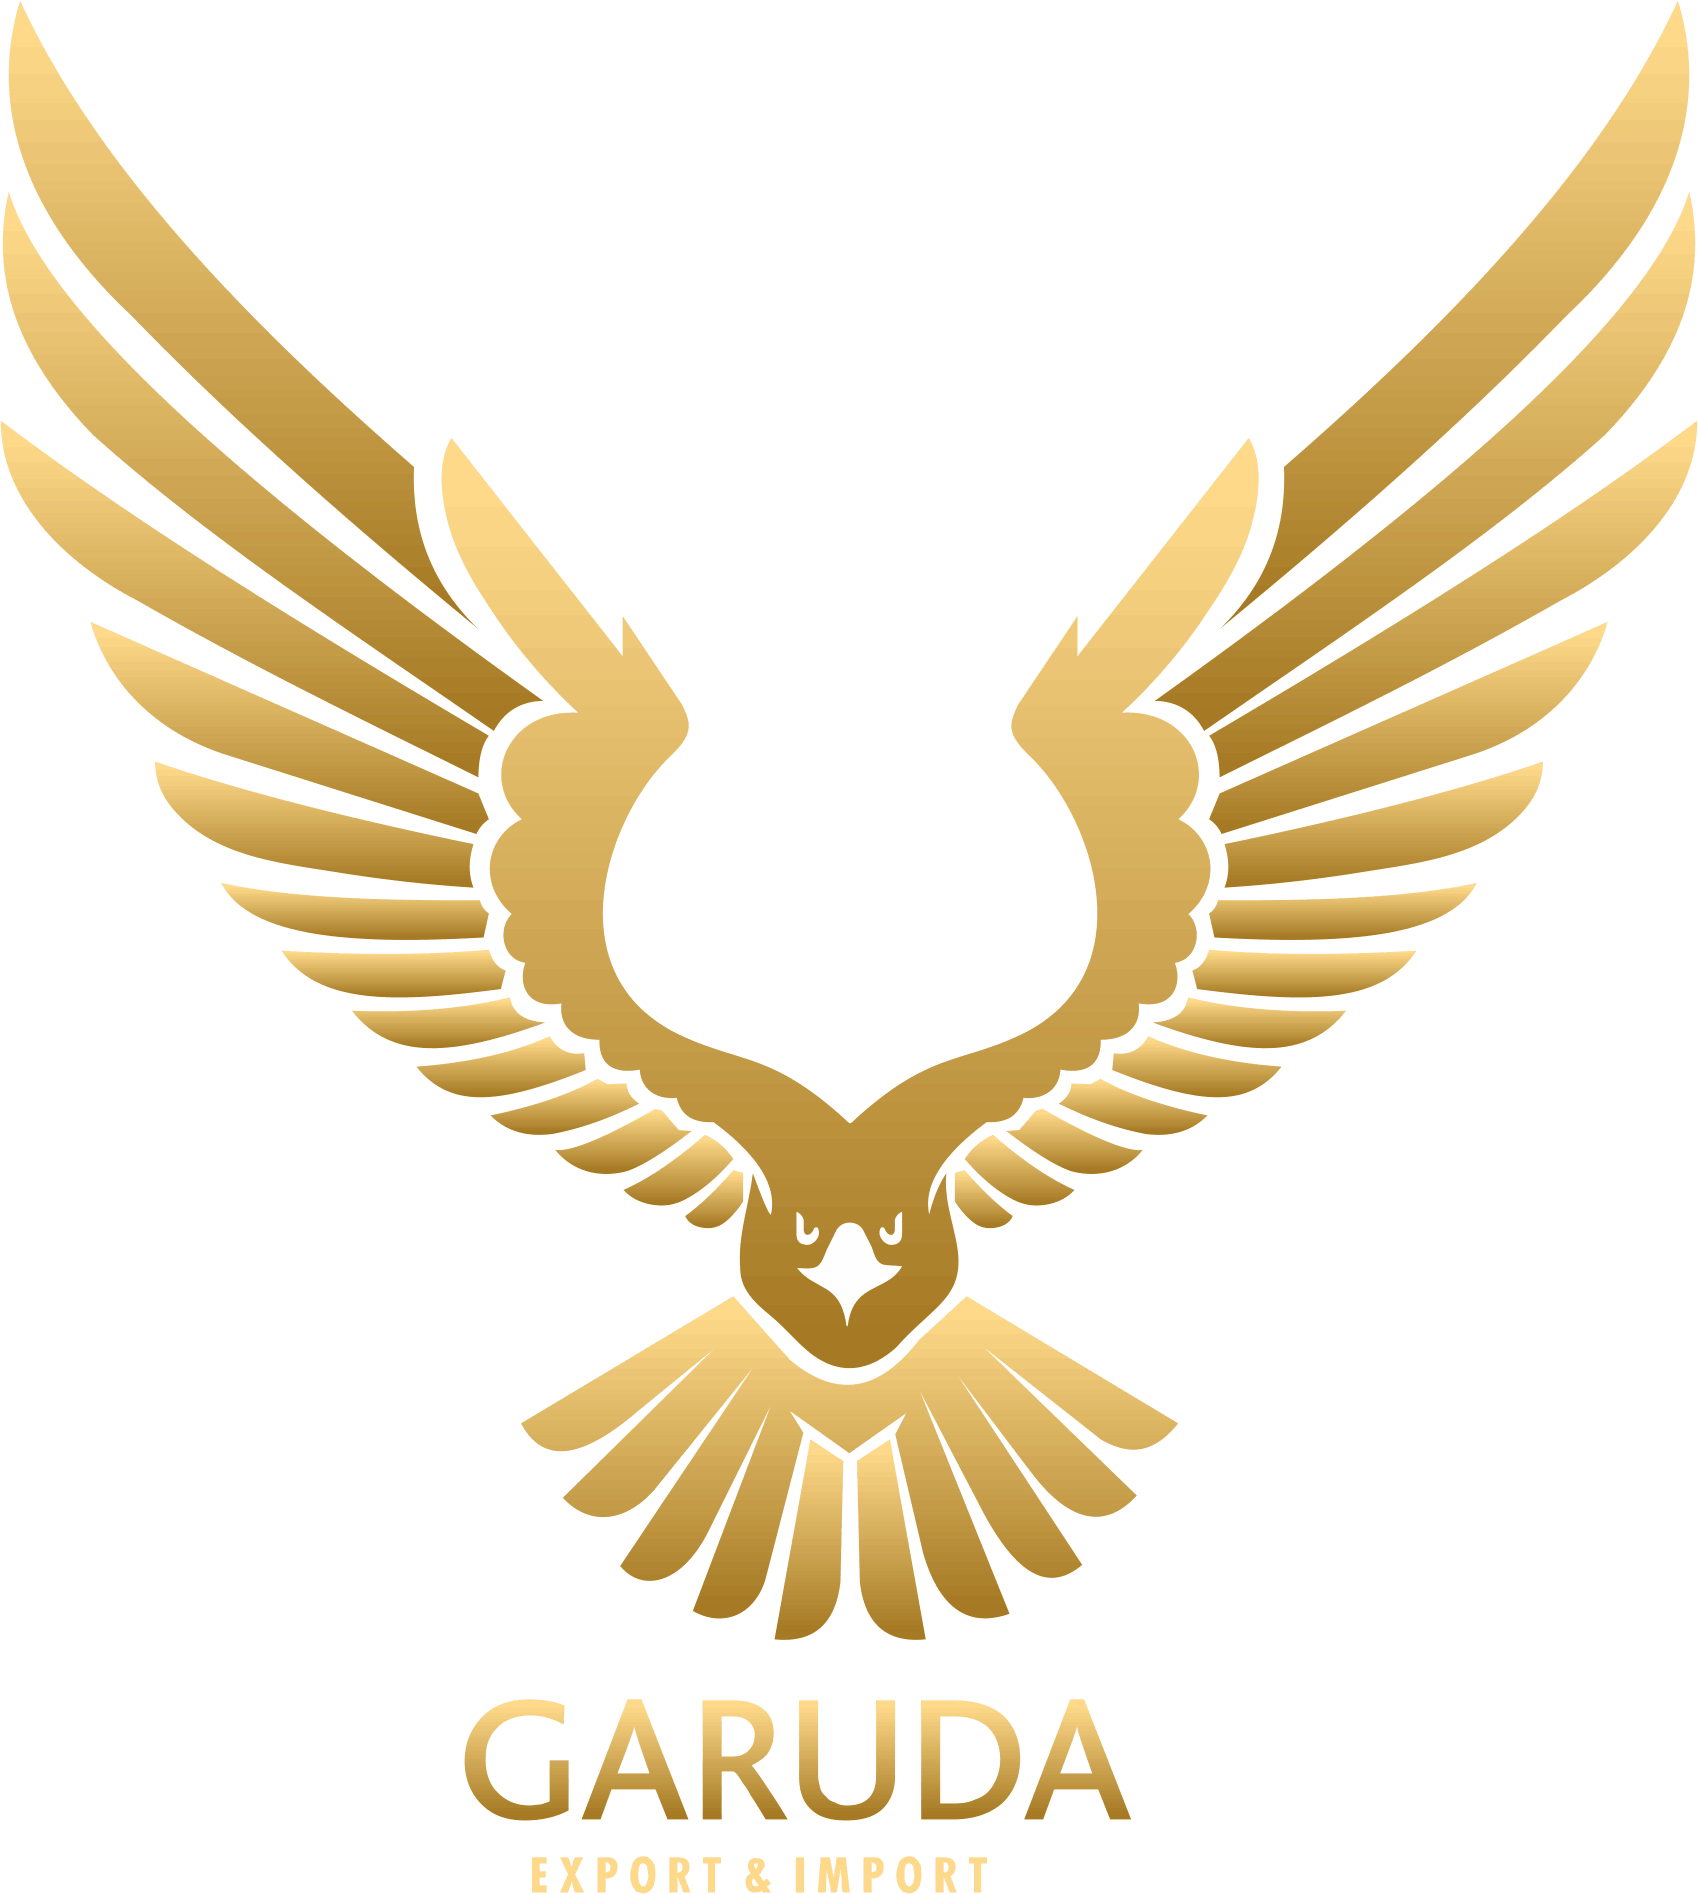 GARUDA EXPORTS & IMPORTS LLC